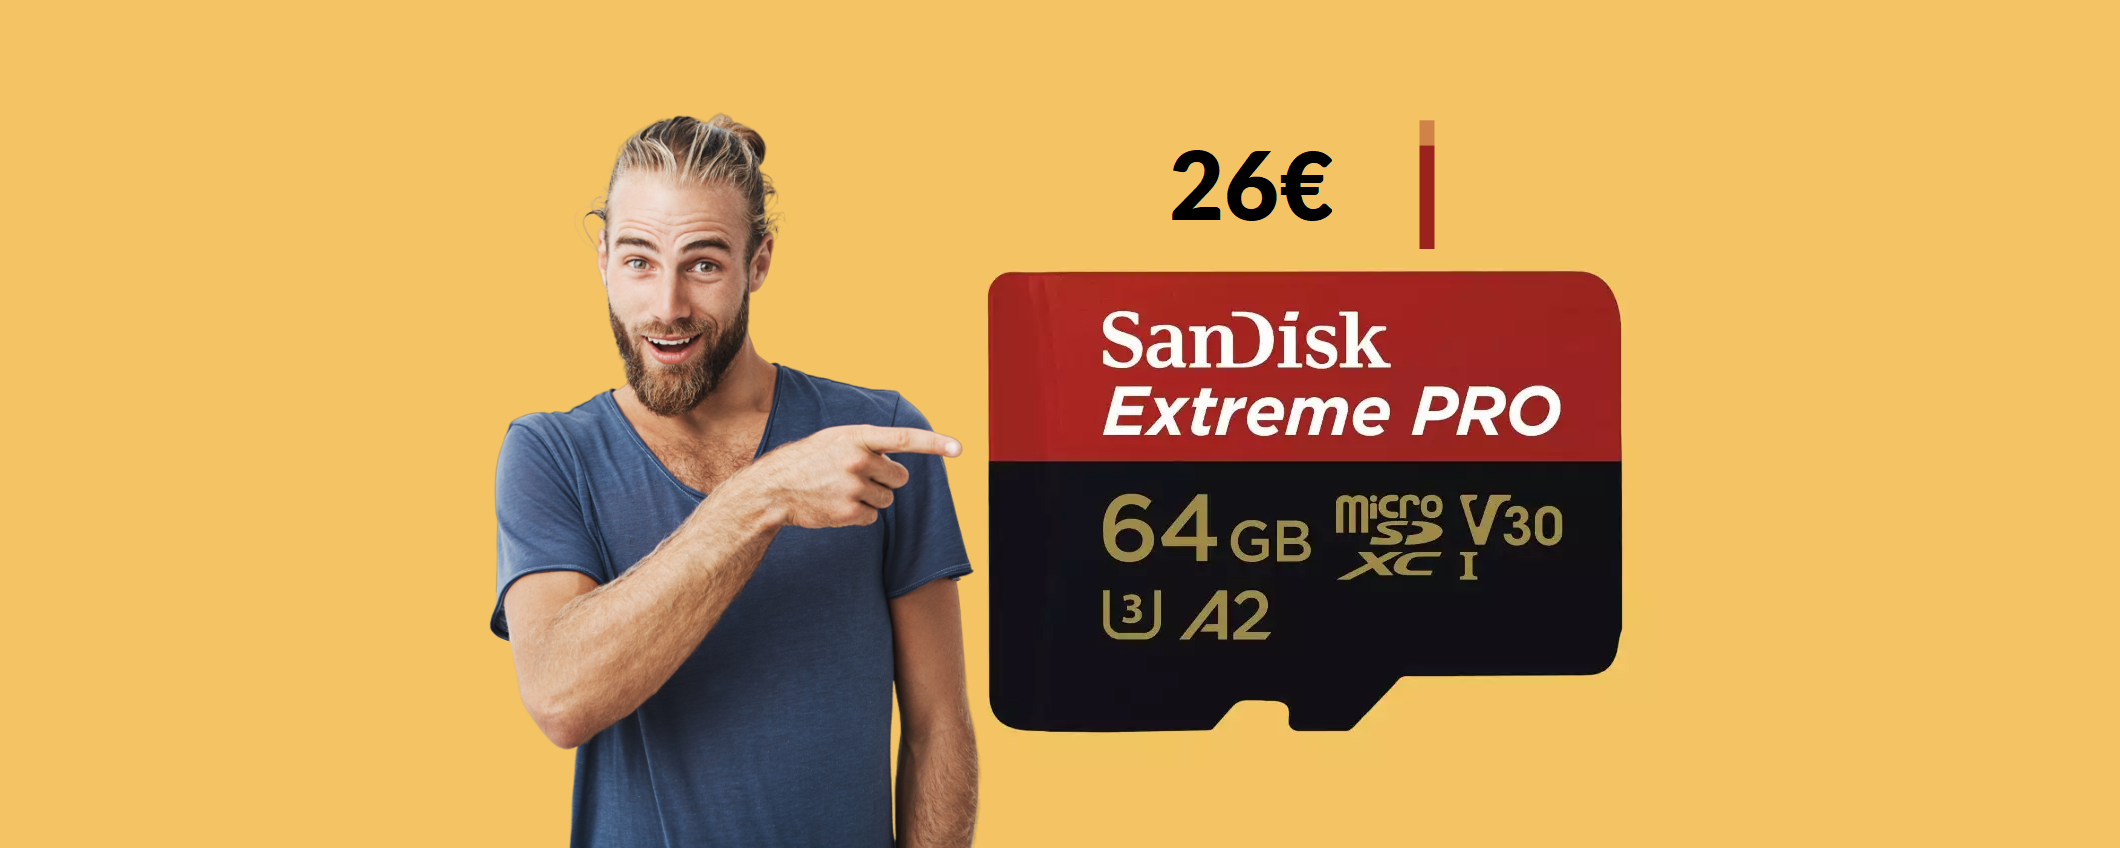 MicroSD SanDisk 64GB: memorizzi di tutto a velocità ESTREMA